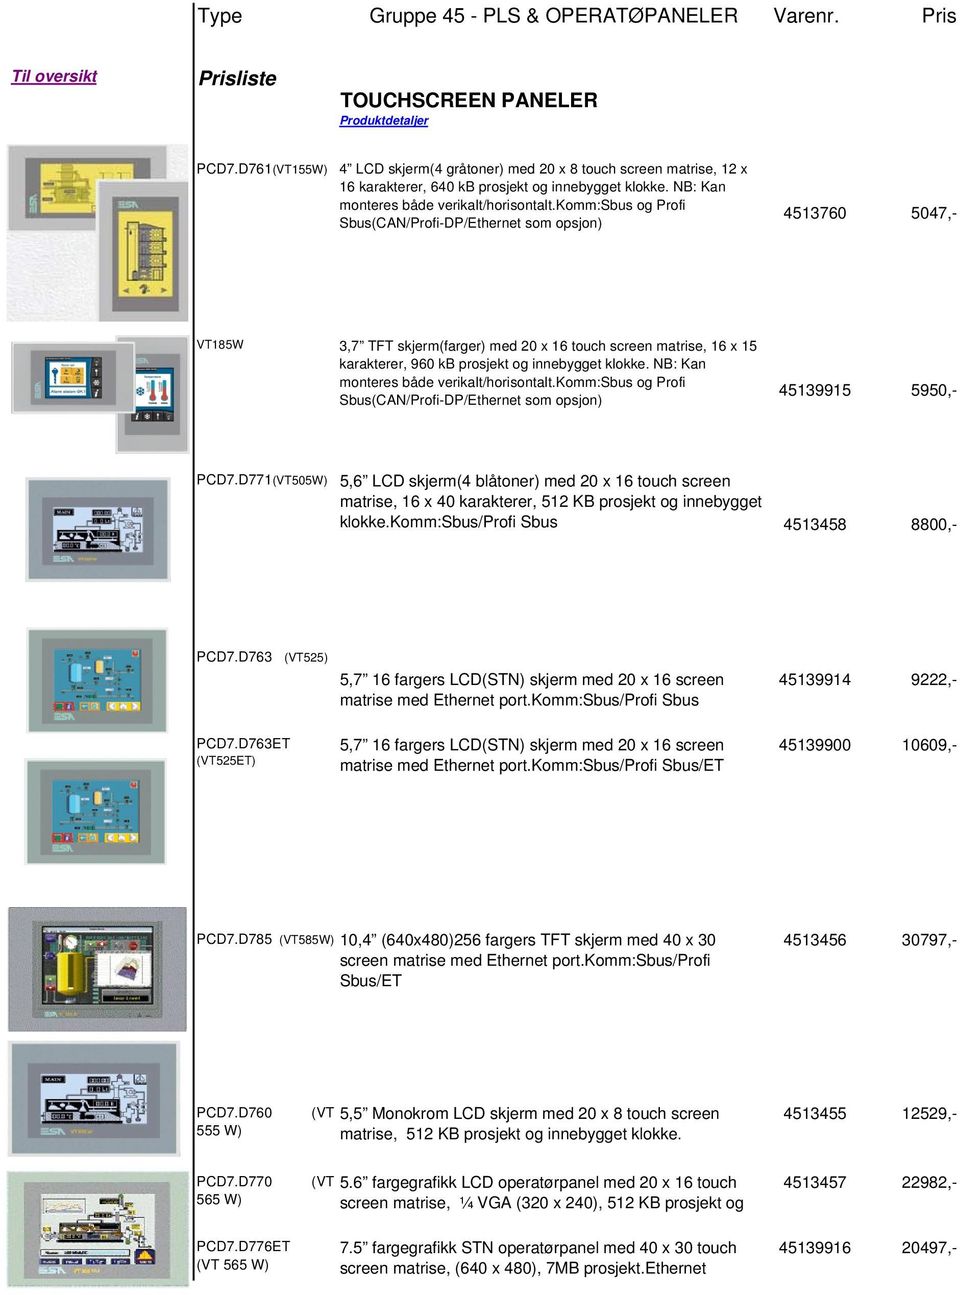 komm:sbus og Profi Sbus(CAN/Profi-DP/Ethernet som opsjon) 4513760 5047,- VT185W 3,7 TFT skjerm(farger) med 20 x 16 touch screen matrise, 16 x 15 karakterer, 960 kb prosjekt og innebygget klokke.